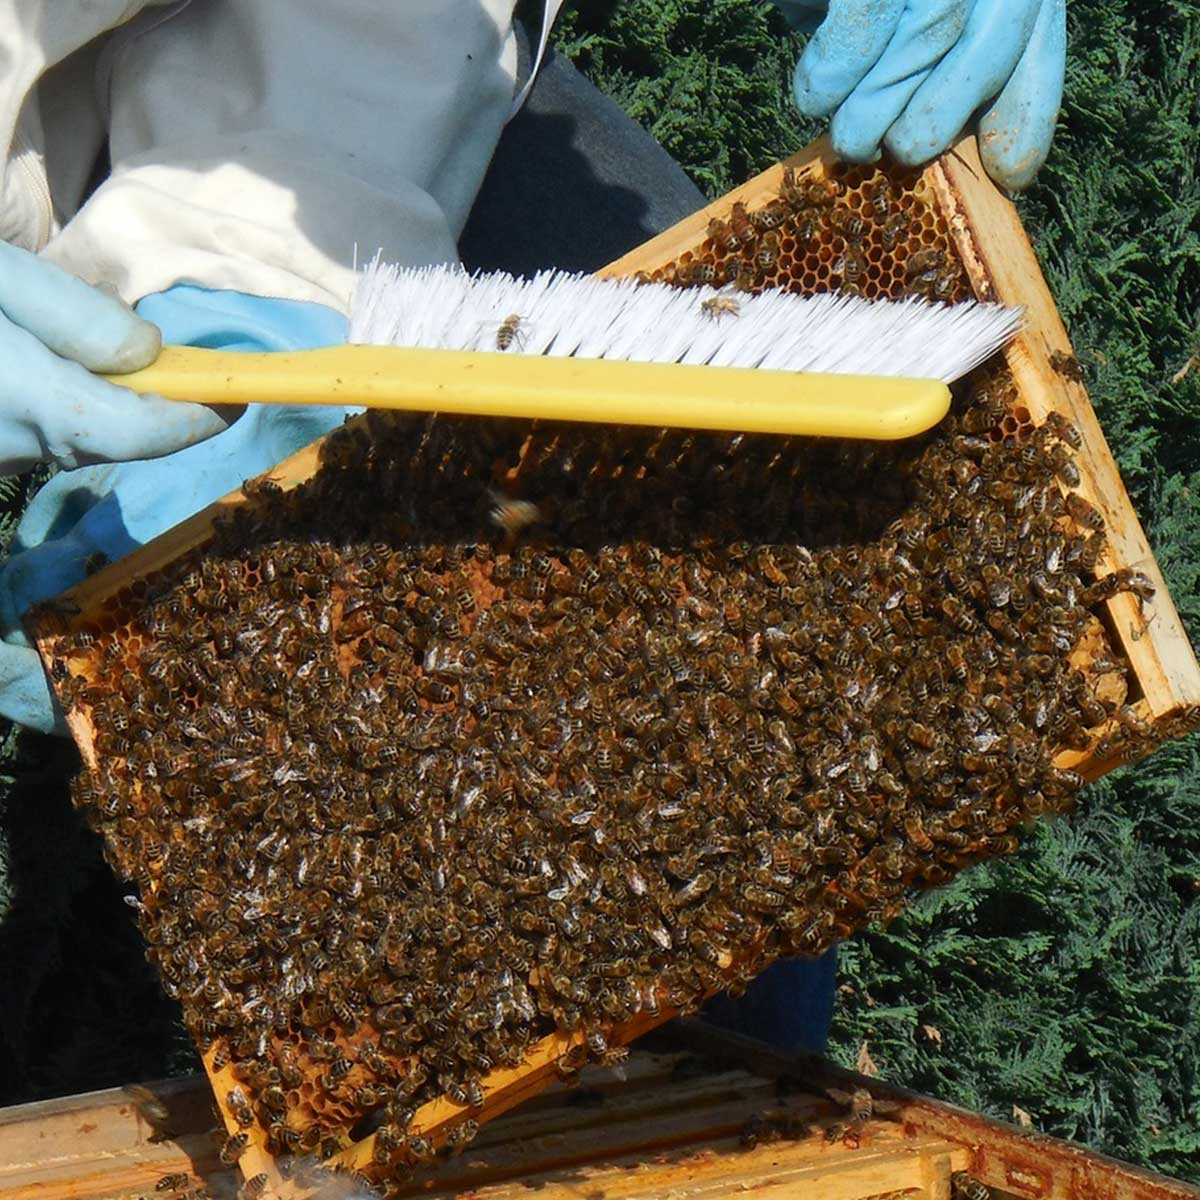 Meliponicultura, una práctica sustentable al rescate de abejas y bosques - Apicultura